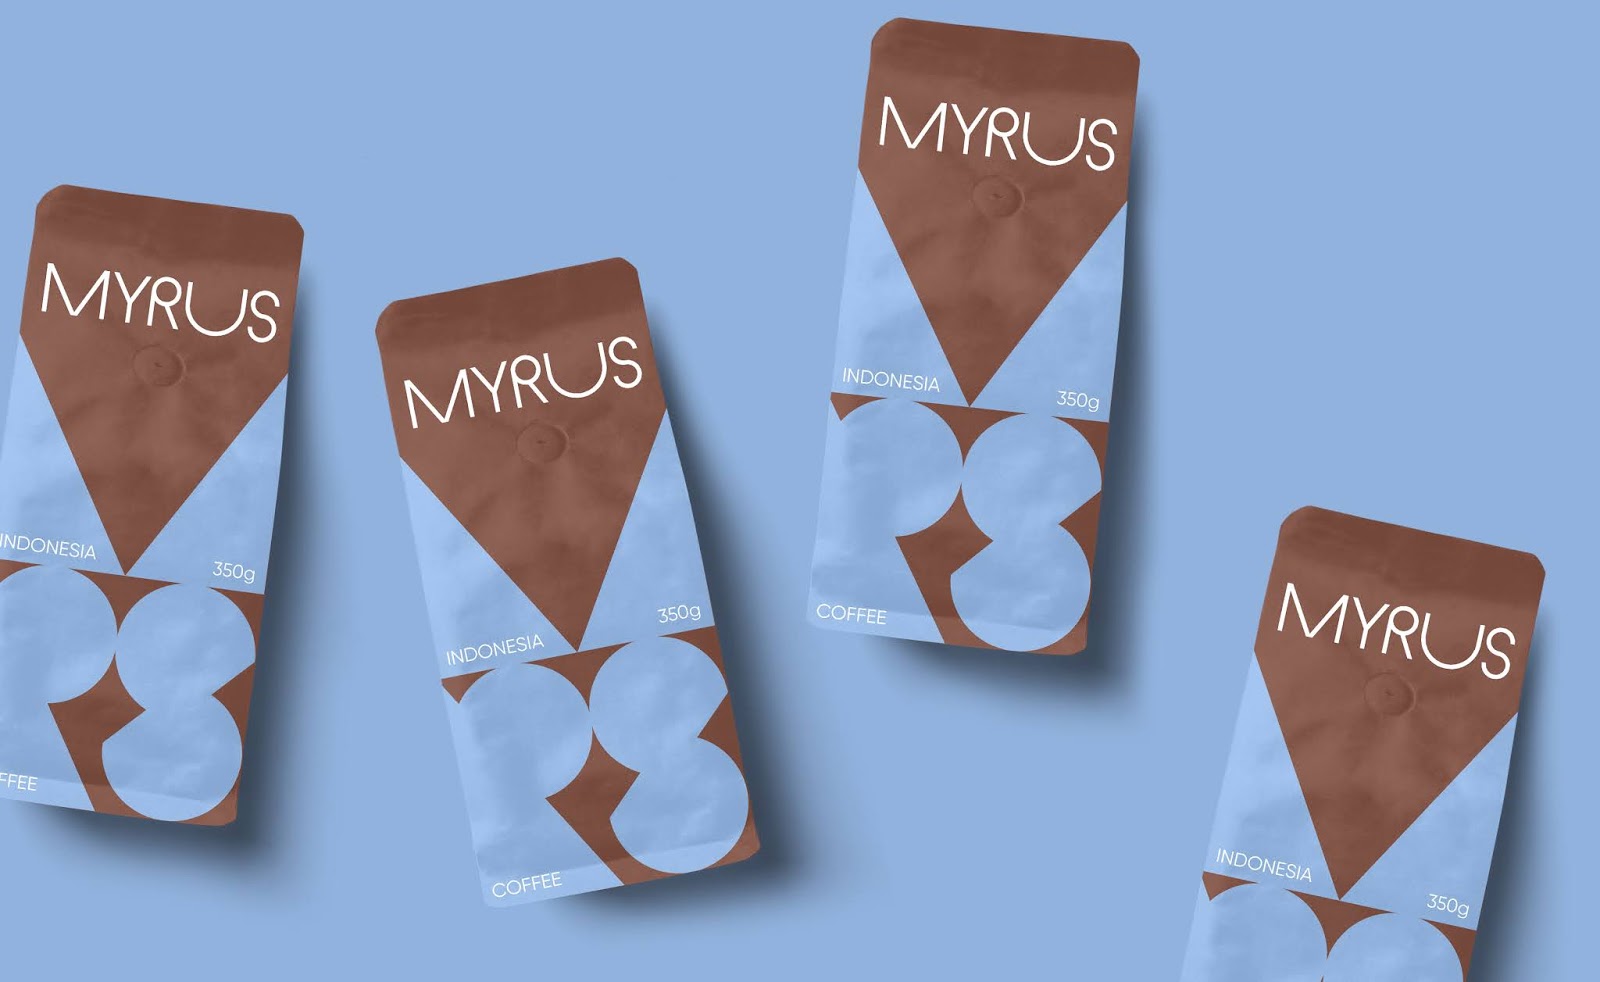 时尚创意的MYRUS咖啡概念包装设计作品欣赏。